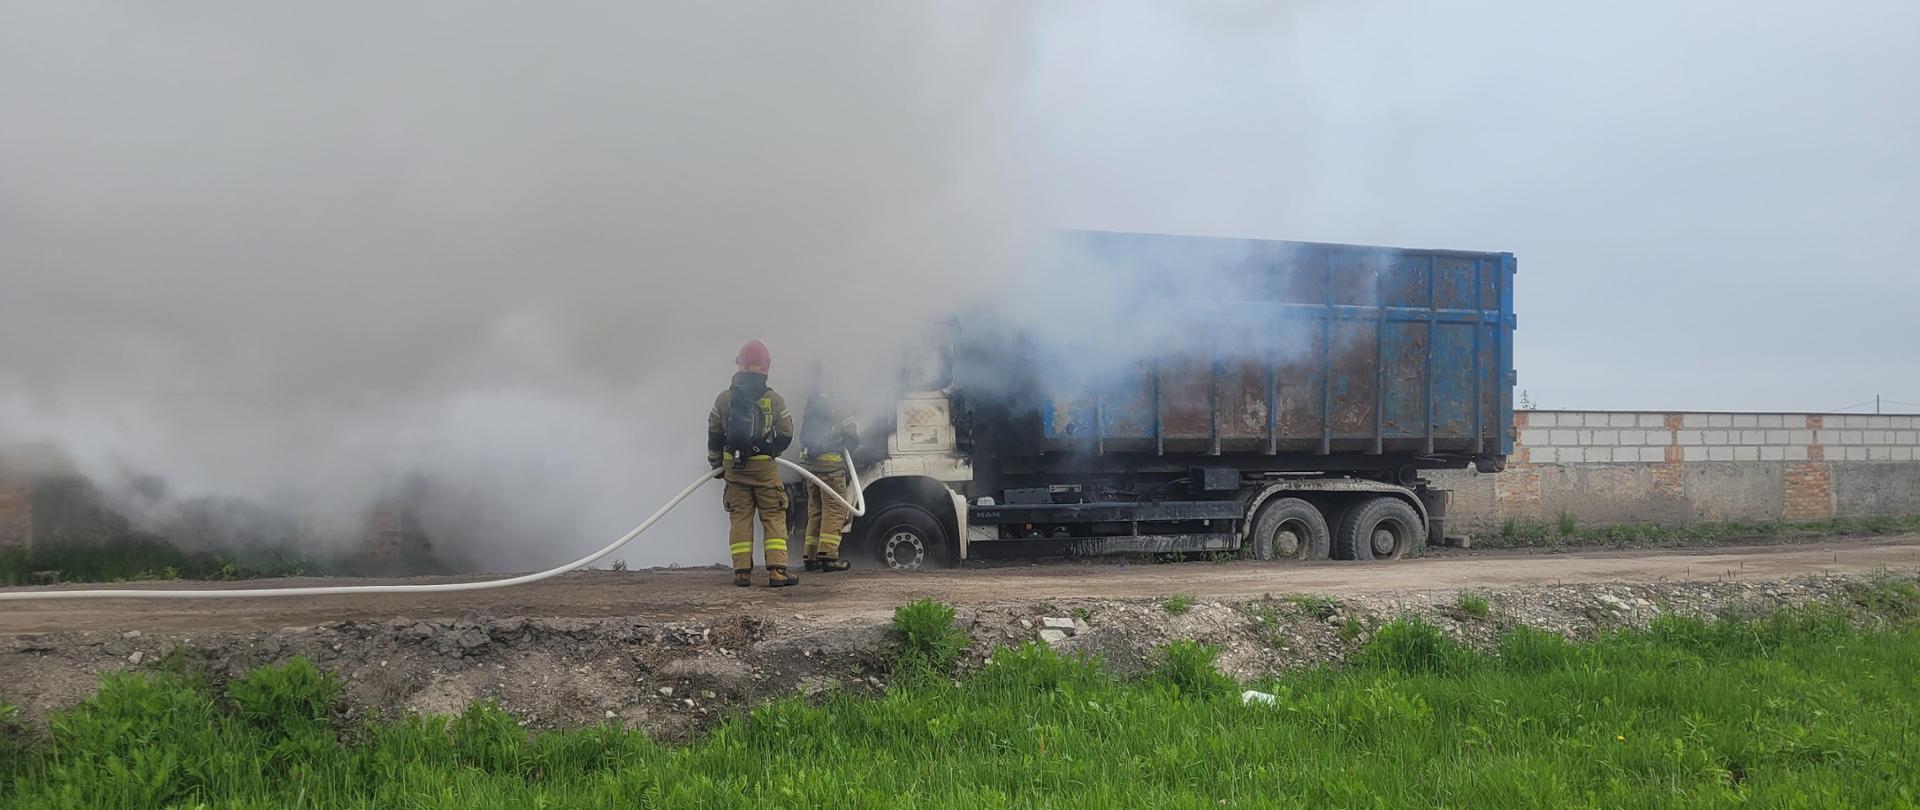 Zdjęcia przedstawiają działania gaśnicze podczas pożaru samochodu ciężarowego. Na fotografii widoczni są strażacy w ubraniach specjalnych oraz mają założone aparaty ochrony dróg oddechowych. Pożar rozwija się w przestrzeni kabiny pojazdu. Samochód ustawiony jest na drodze gruntowej.